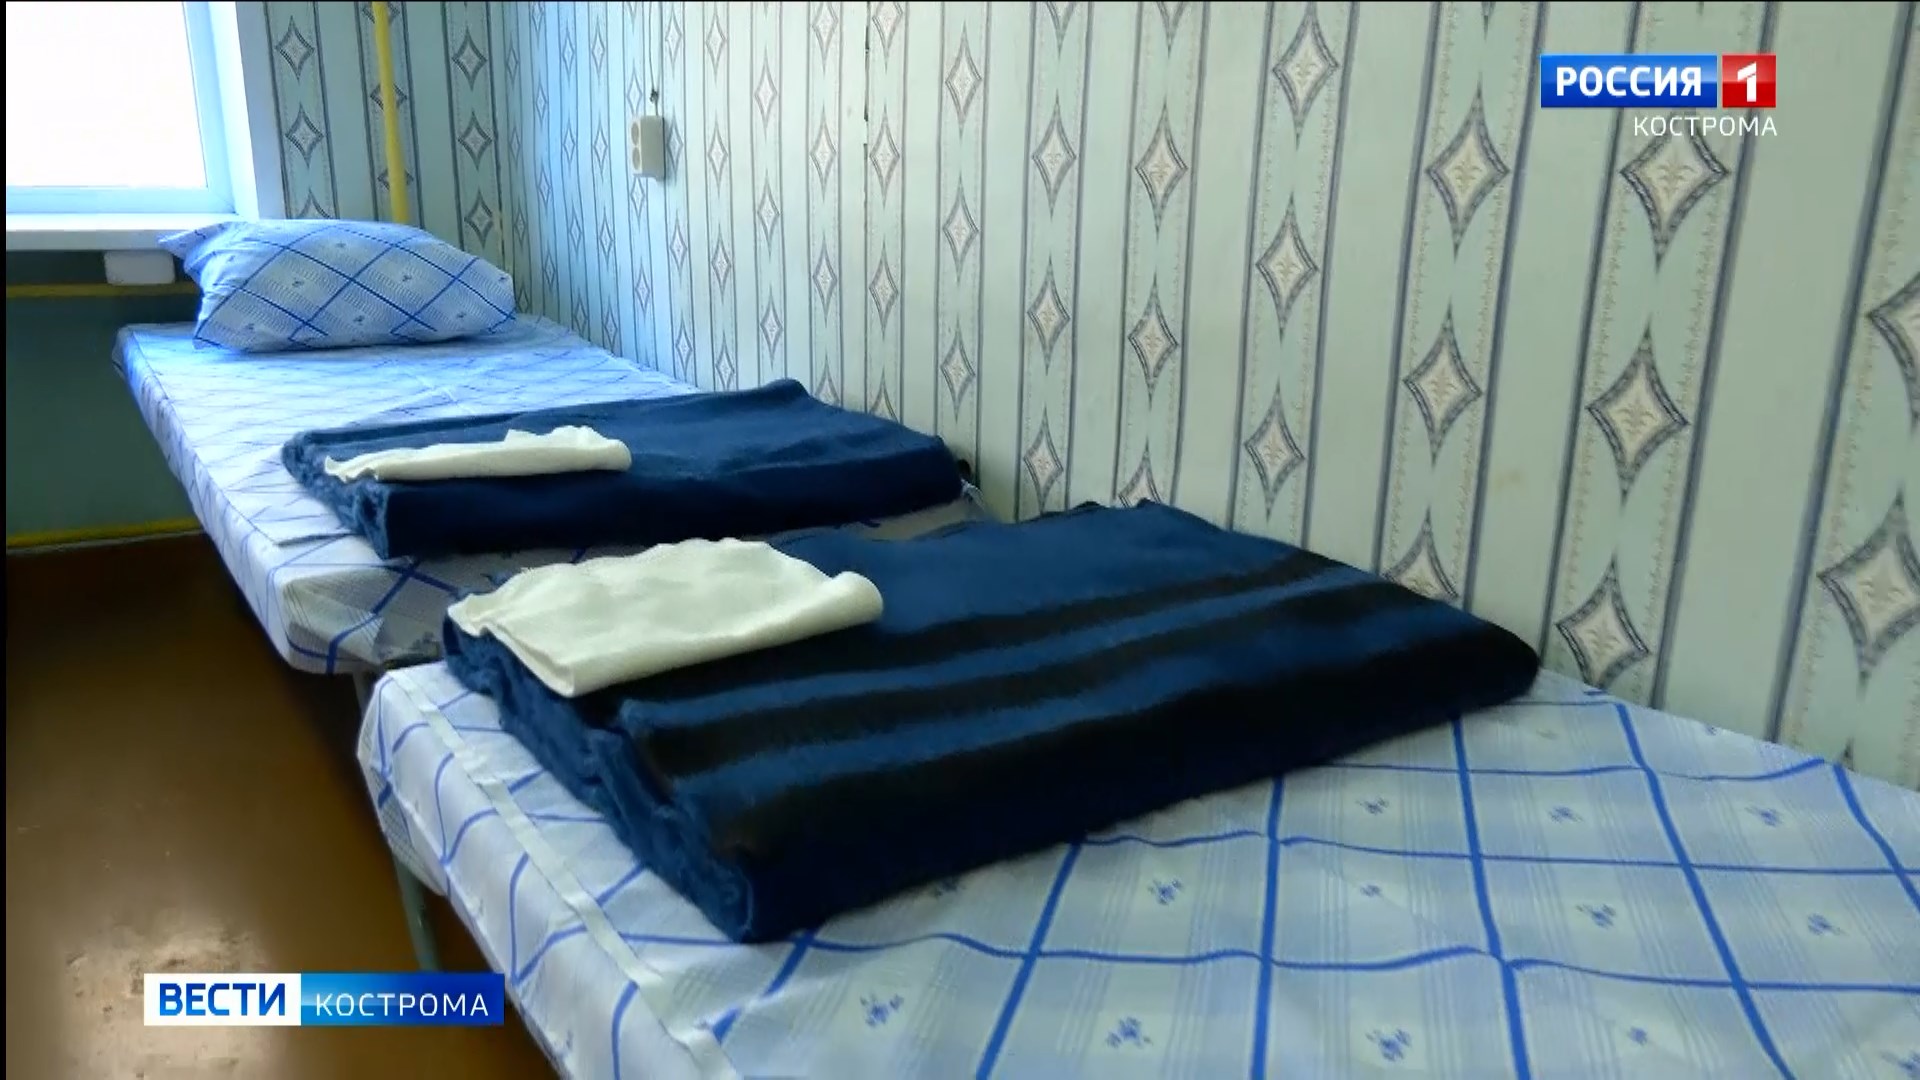 Бывшие студенческие общежития в Костроме оборудуют под казармы для мобилизованных